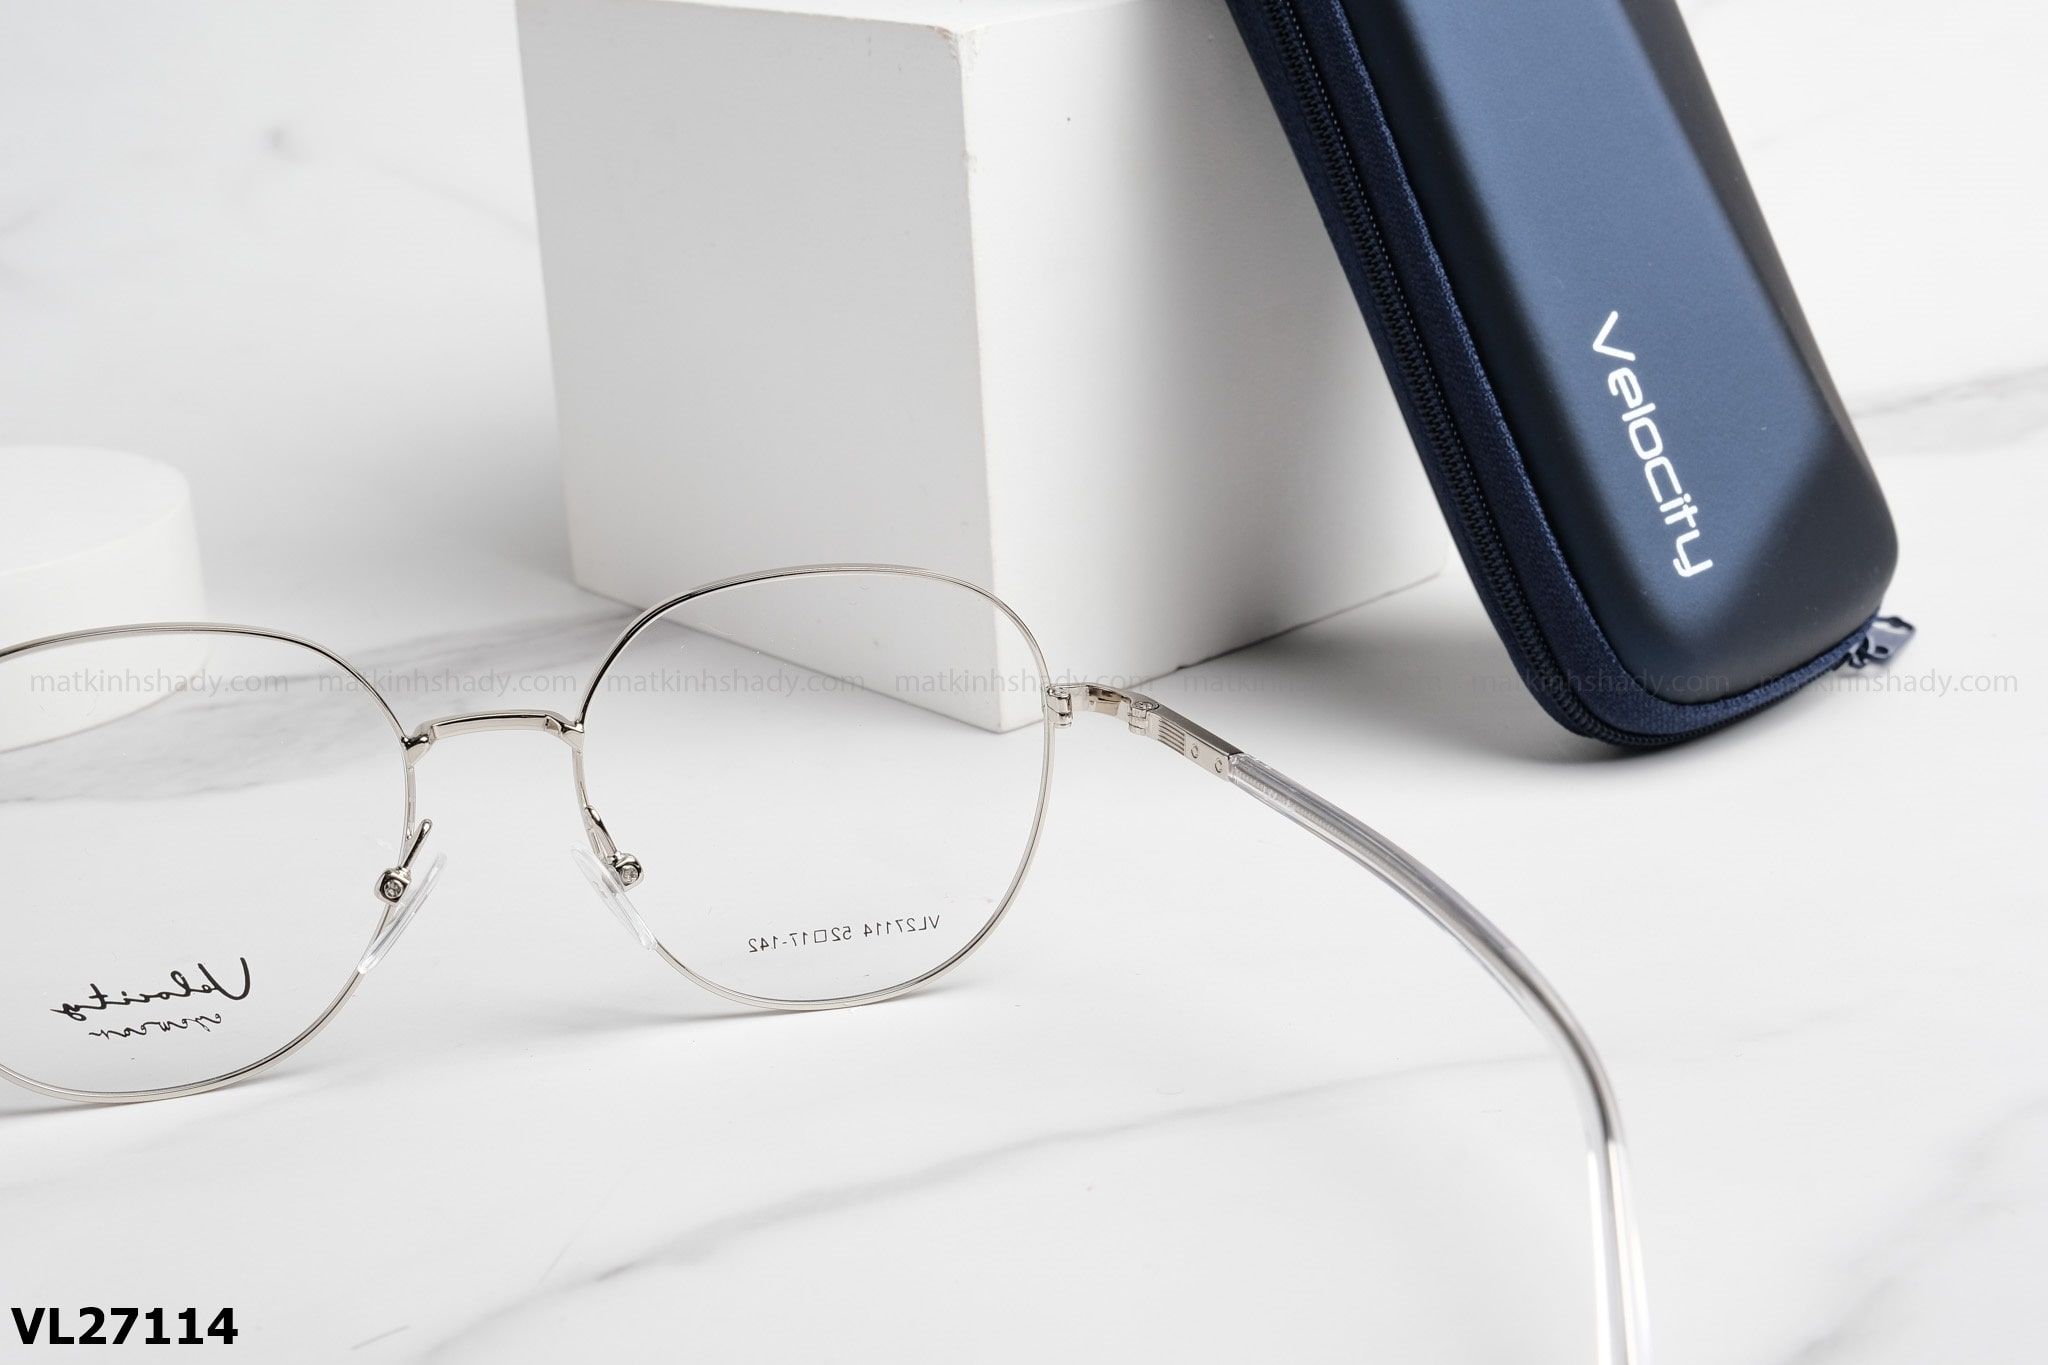  Velocity Eyewear - Glasses - VL27114 